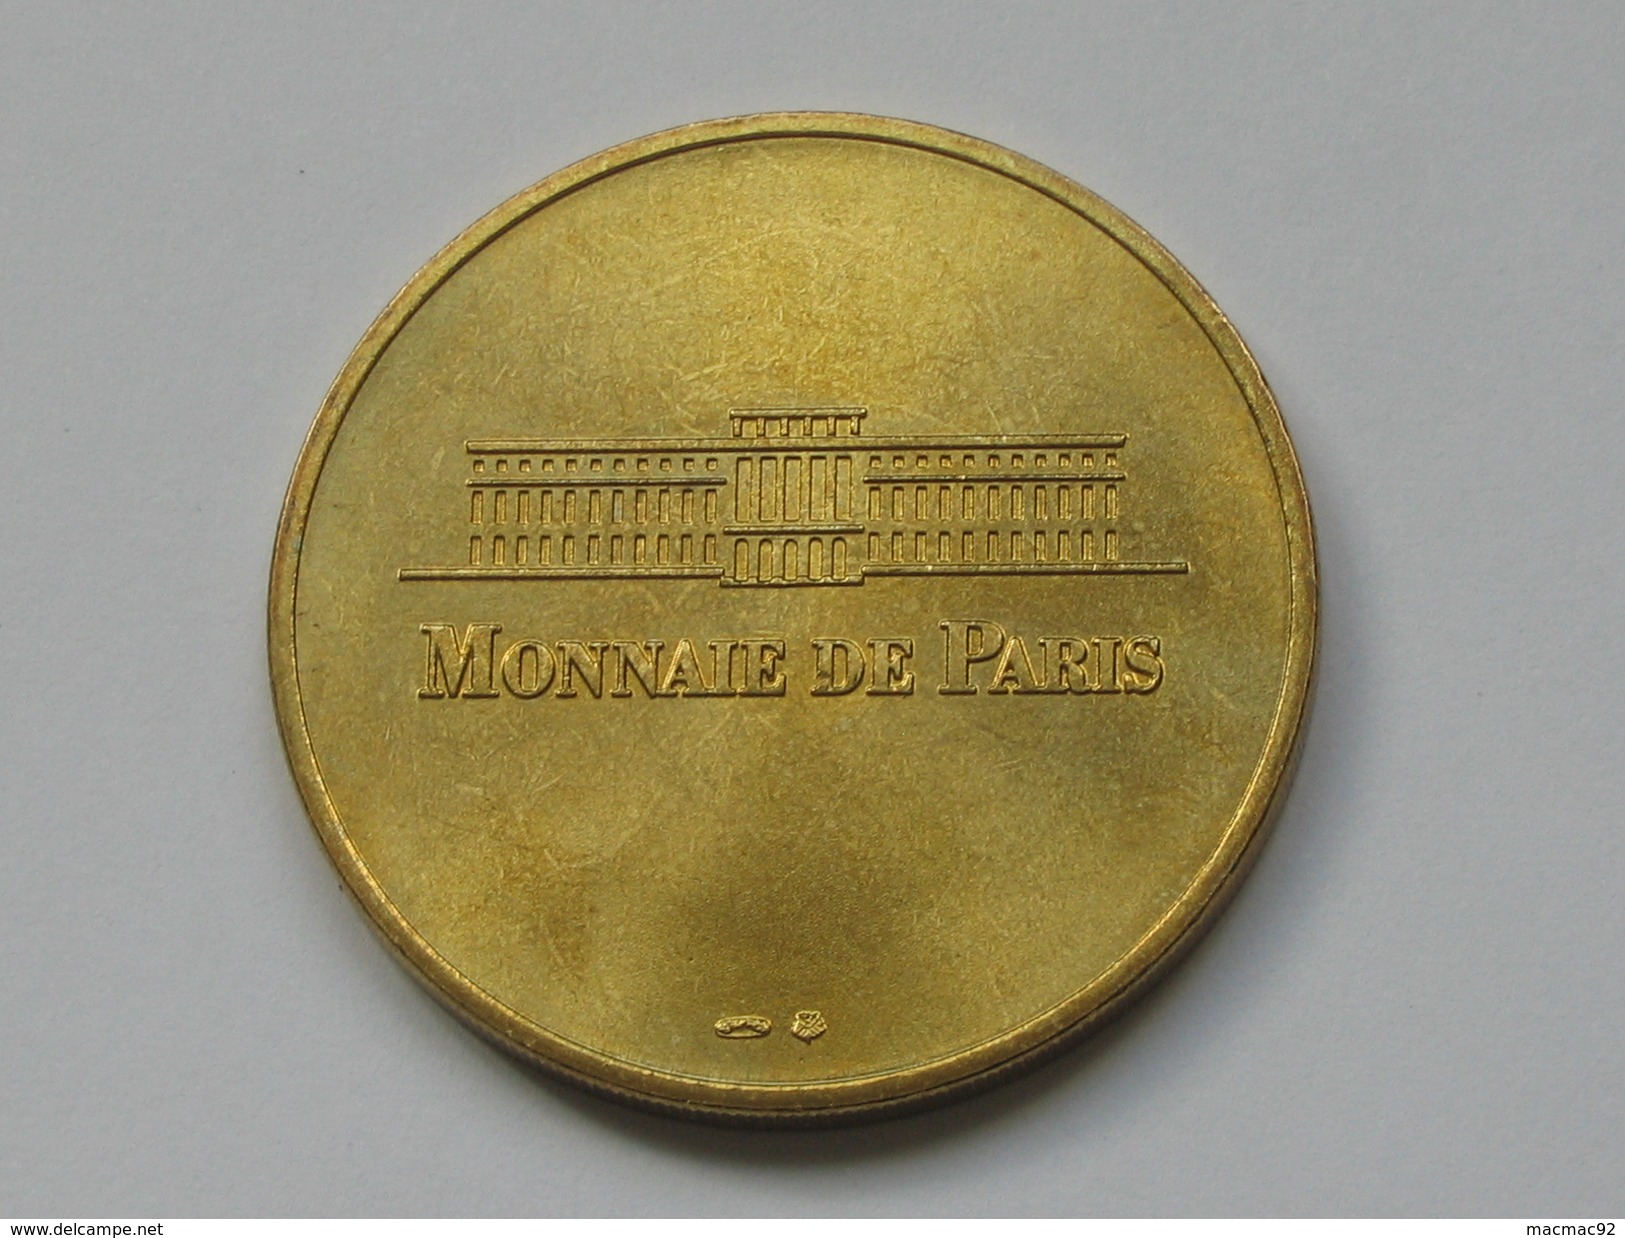 Monnaie De Paris 1997-1998 - PARC ZOOLOGIQUE DE PARIS   **** EN ACHAT IMMEDIAT  **** - Non-datés